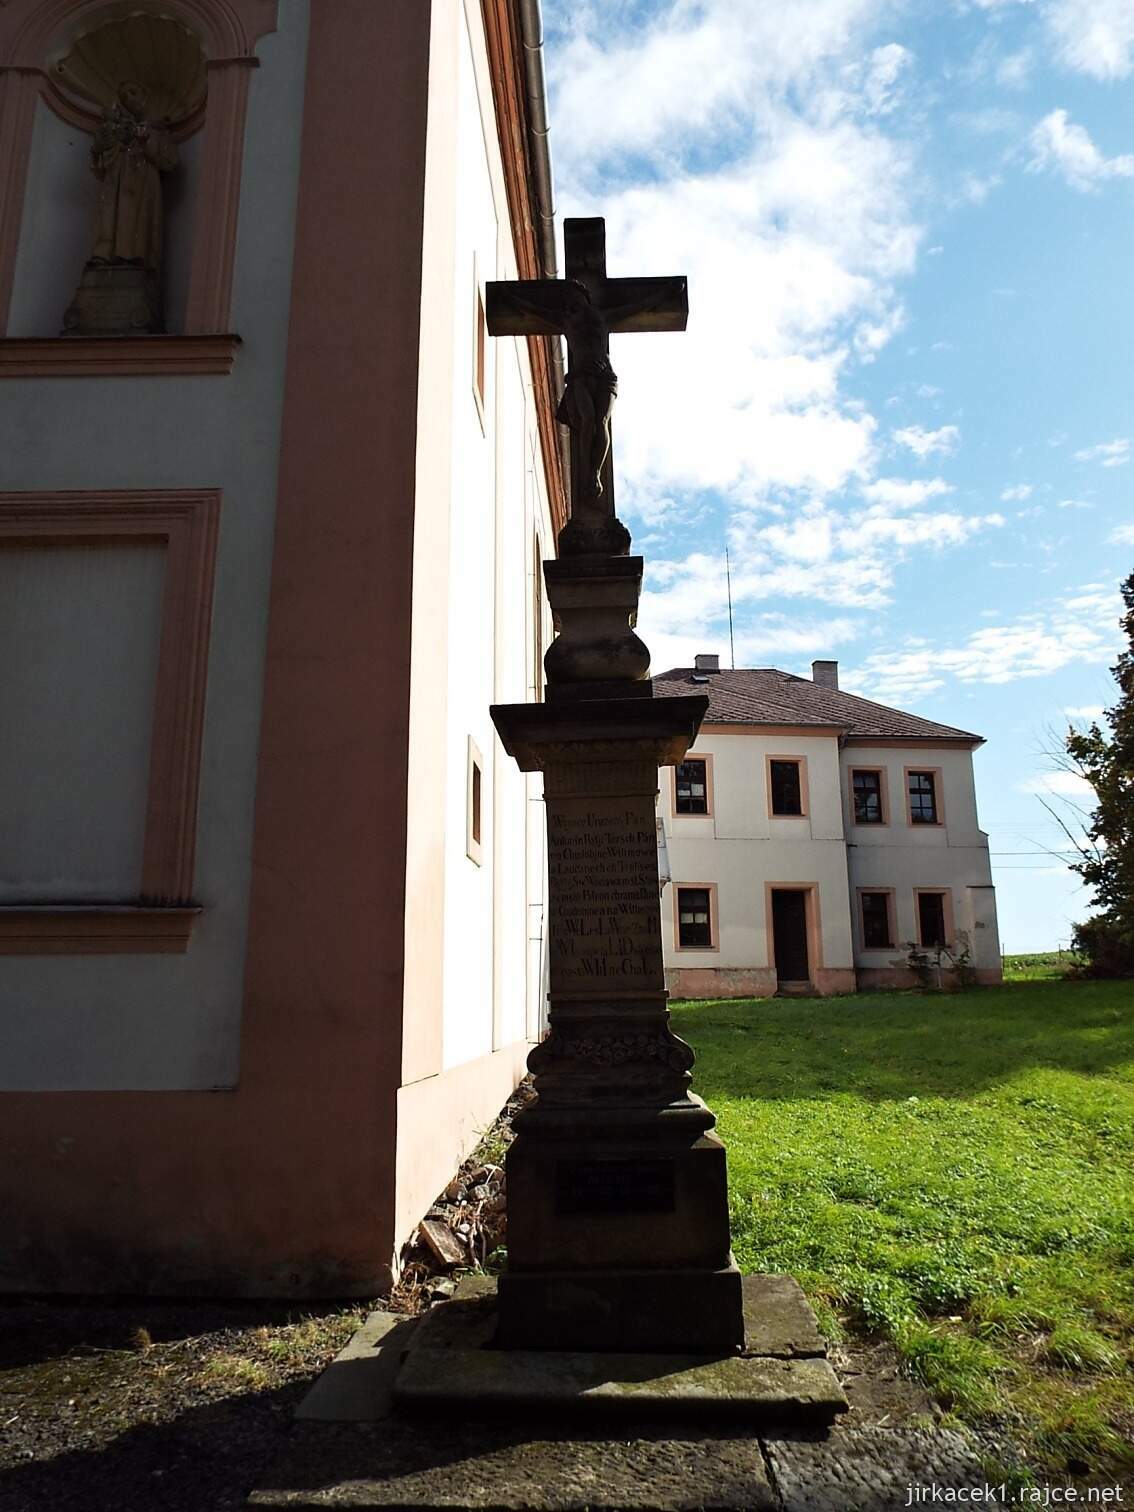 C - Chudobín - kostel sv. Františka Serafinského 02 - kříž s Kristem u vchodu